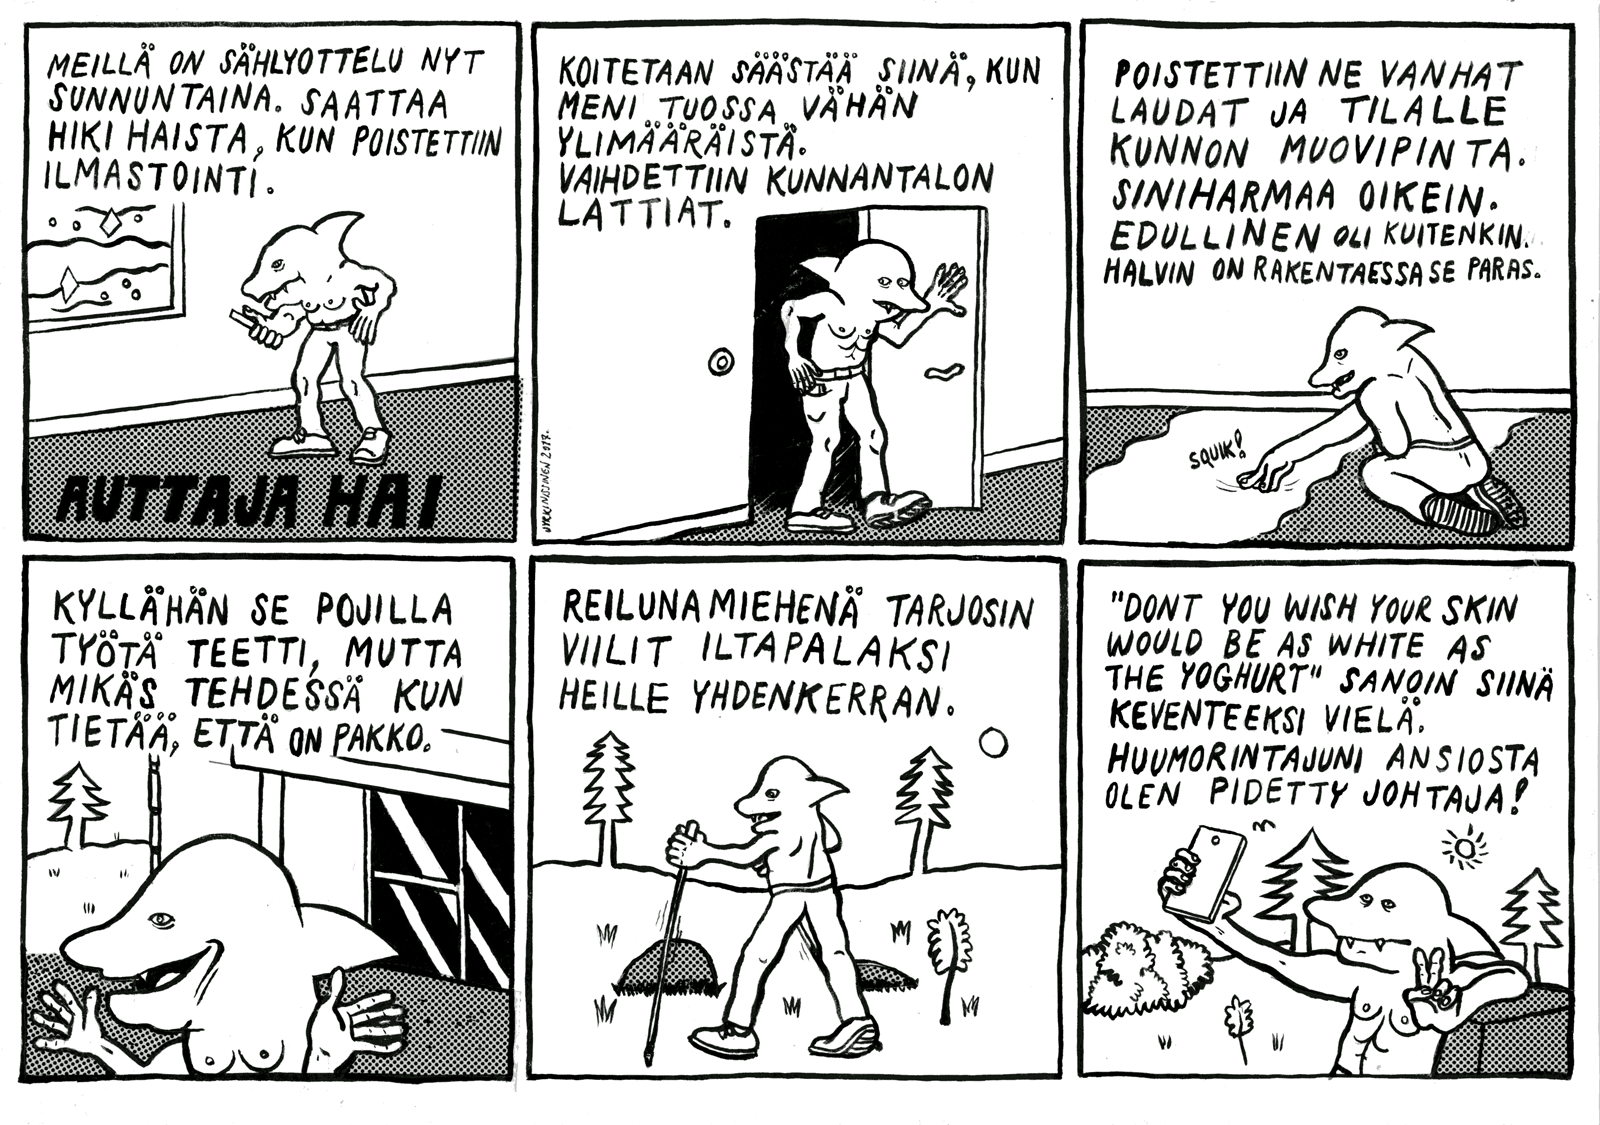 Sarjakuva: Jyrki Nissinen.